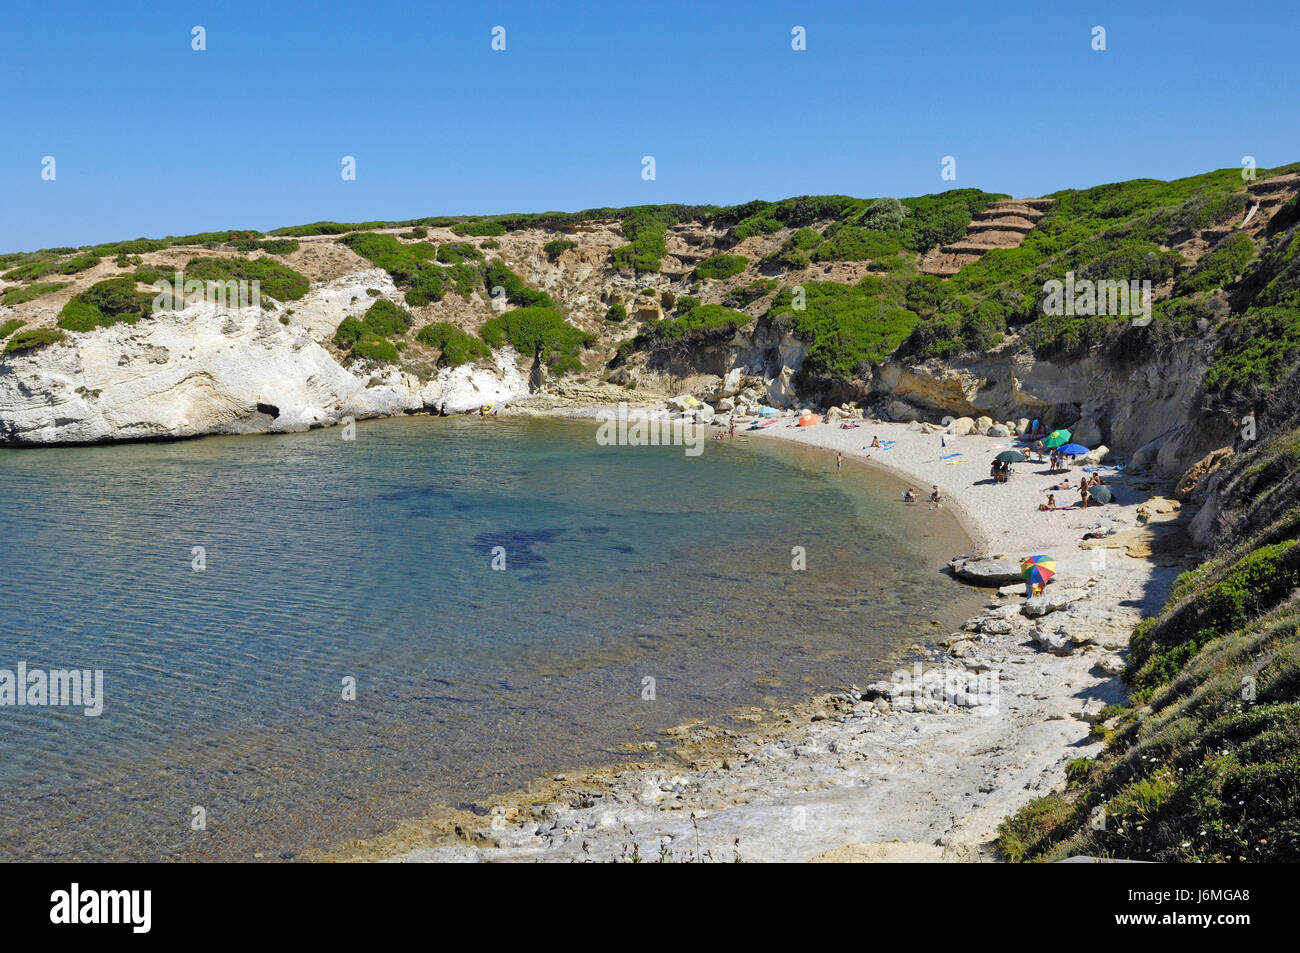 the beach of s'Archittu, Santa Caterina di Pittinuri, Sardinia, italy Stock Photo